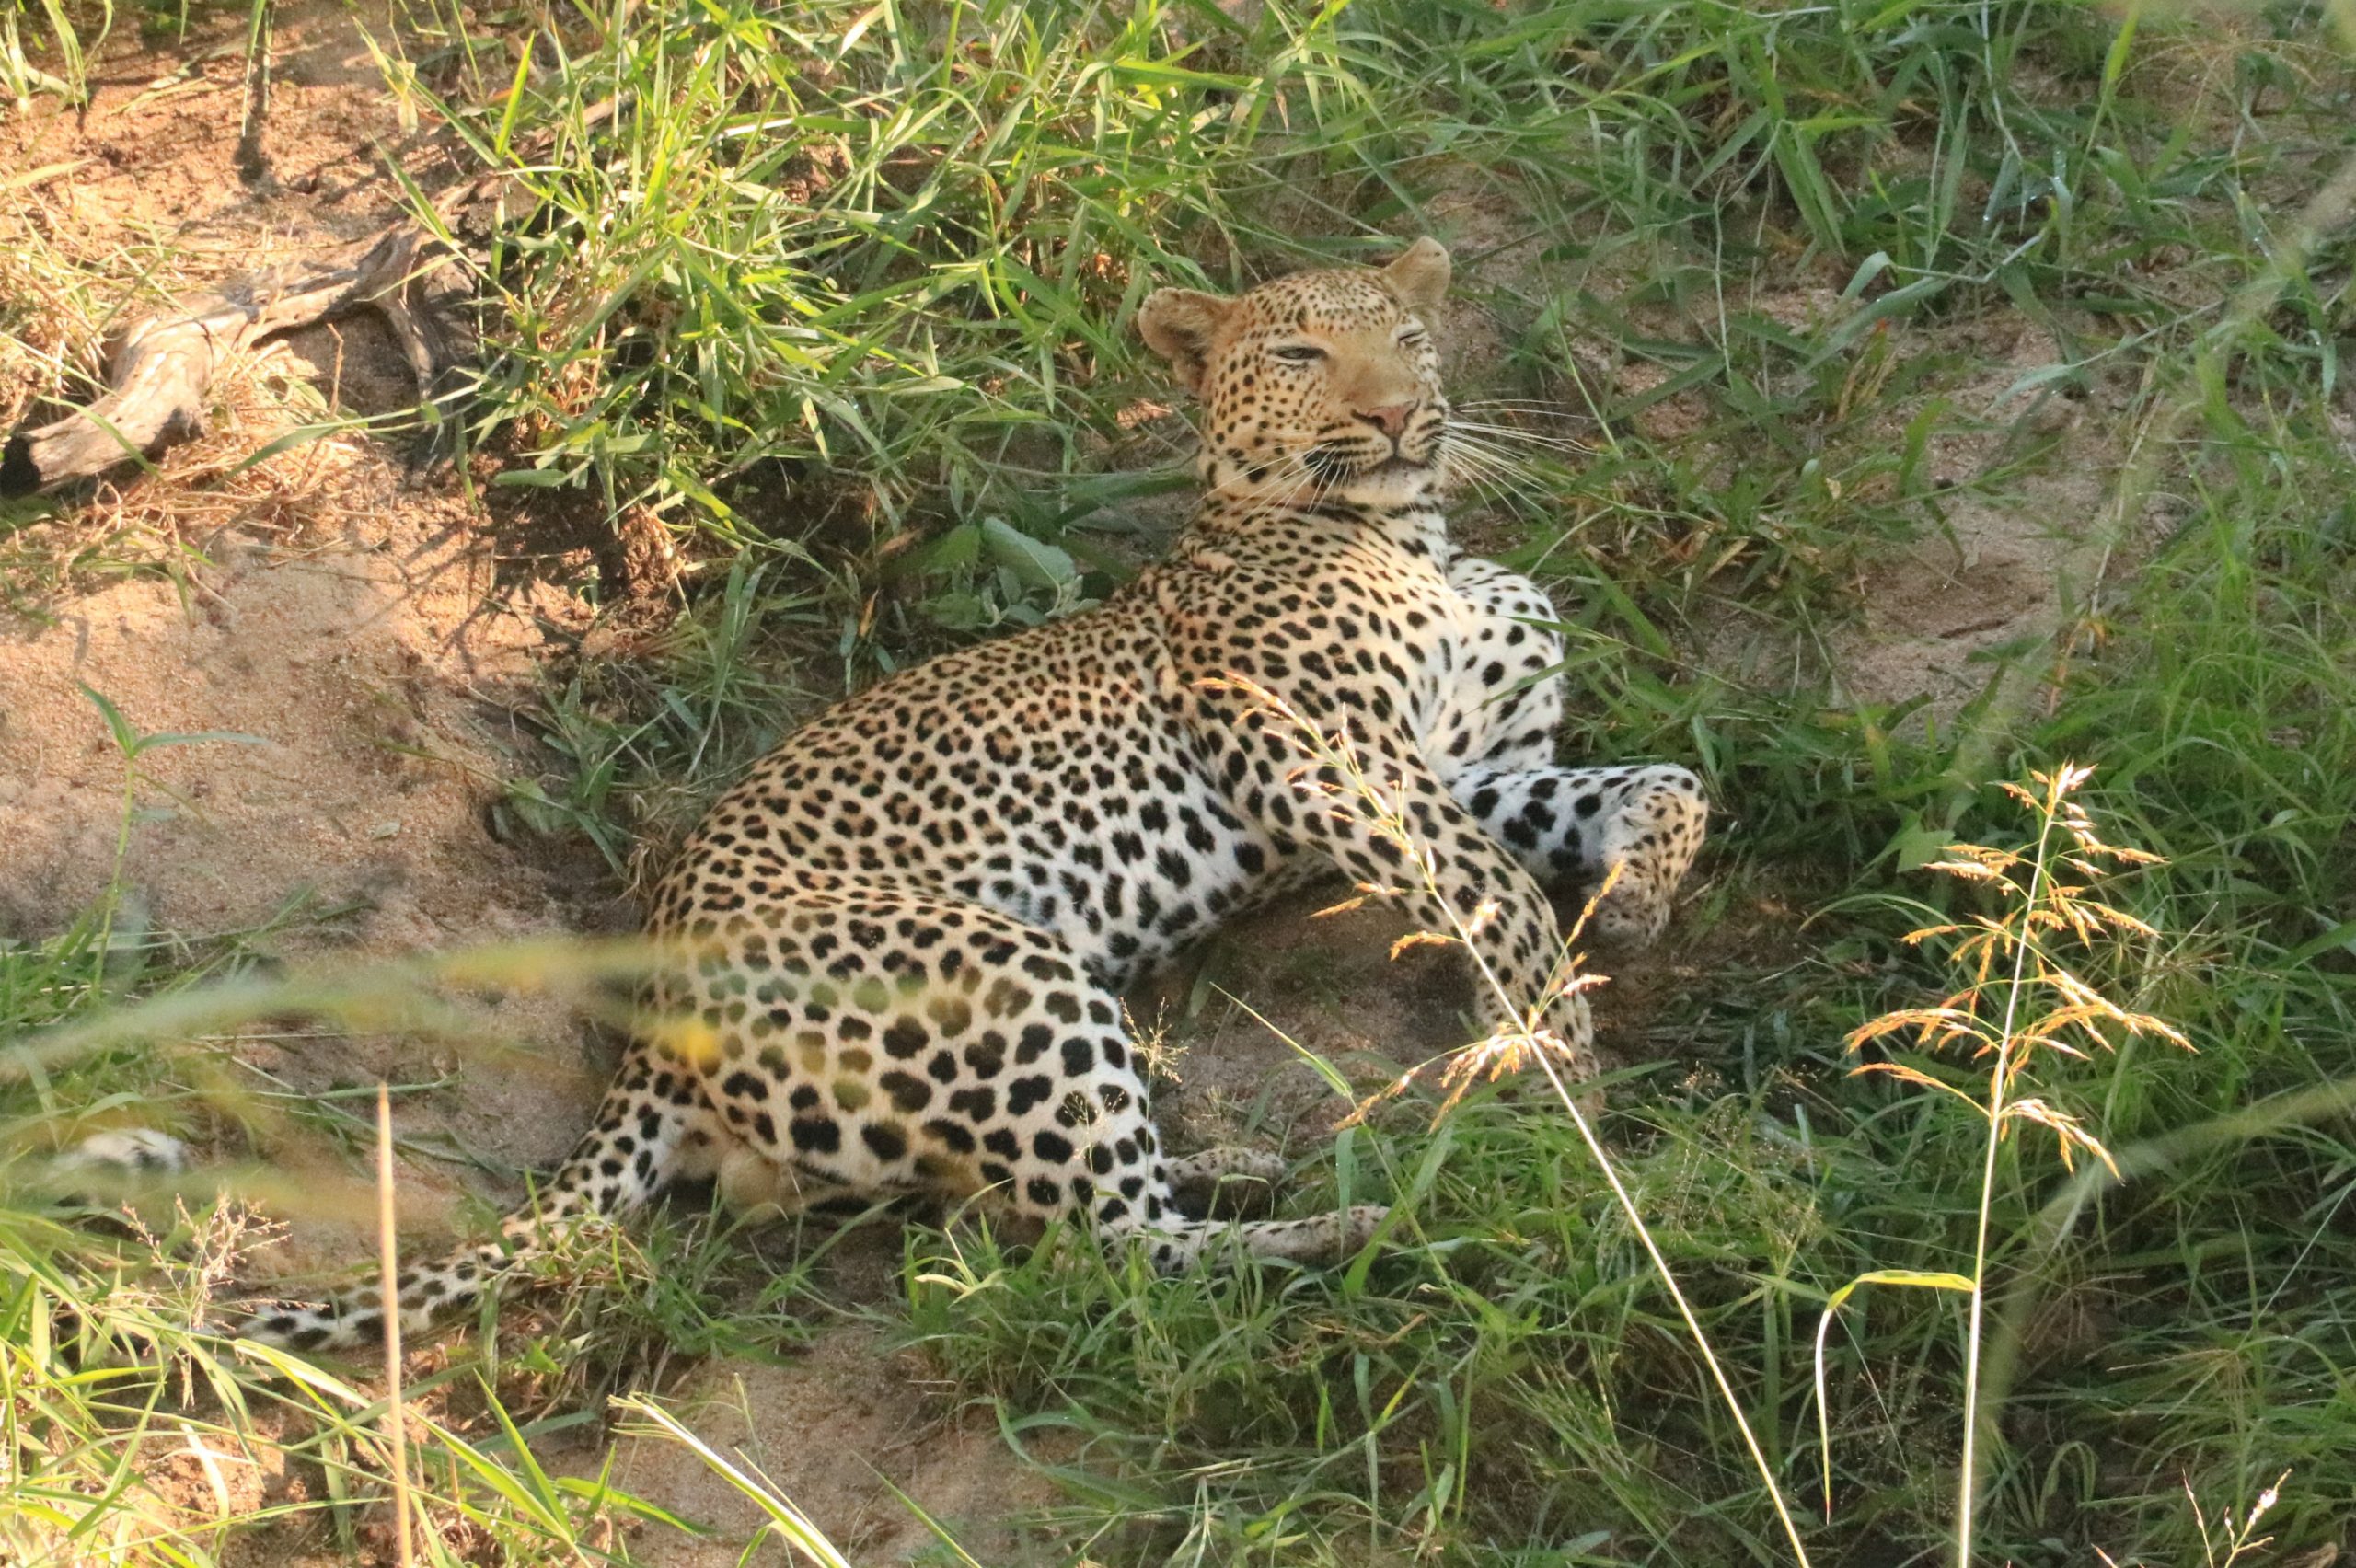 A leopard resting in the scrub.